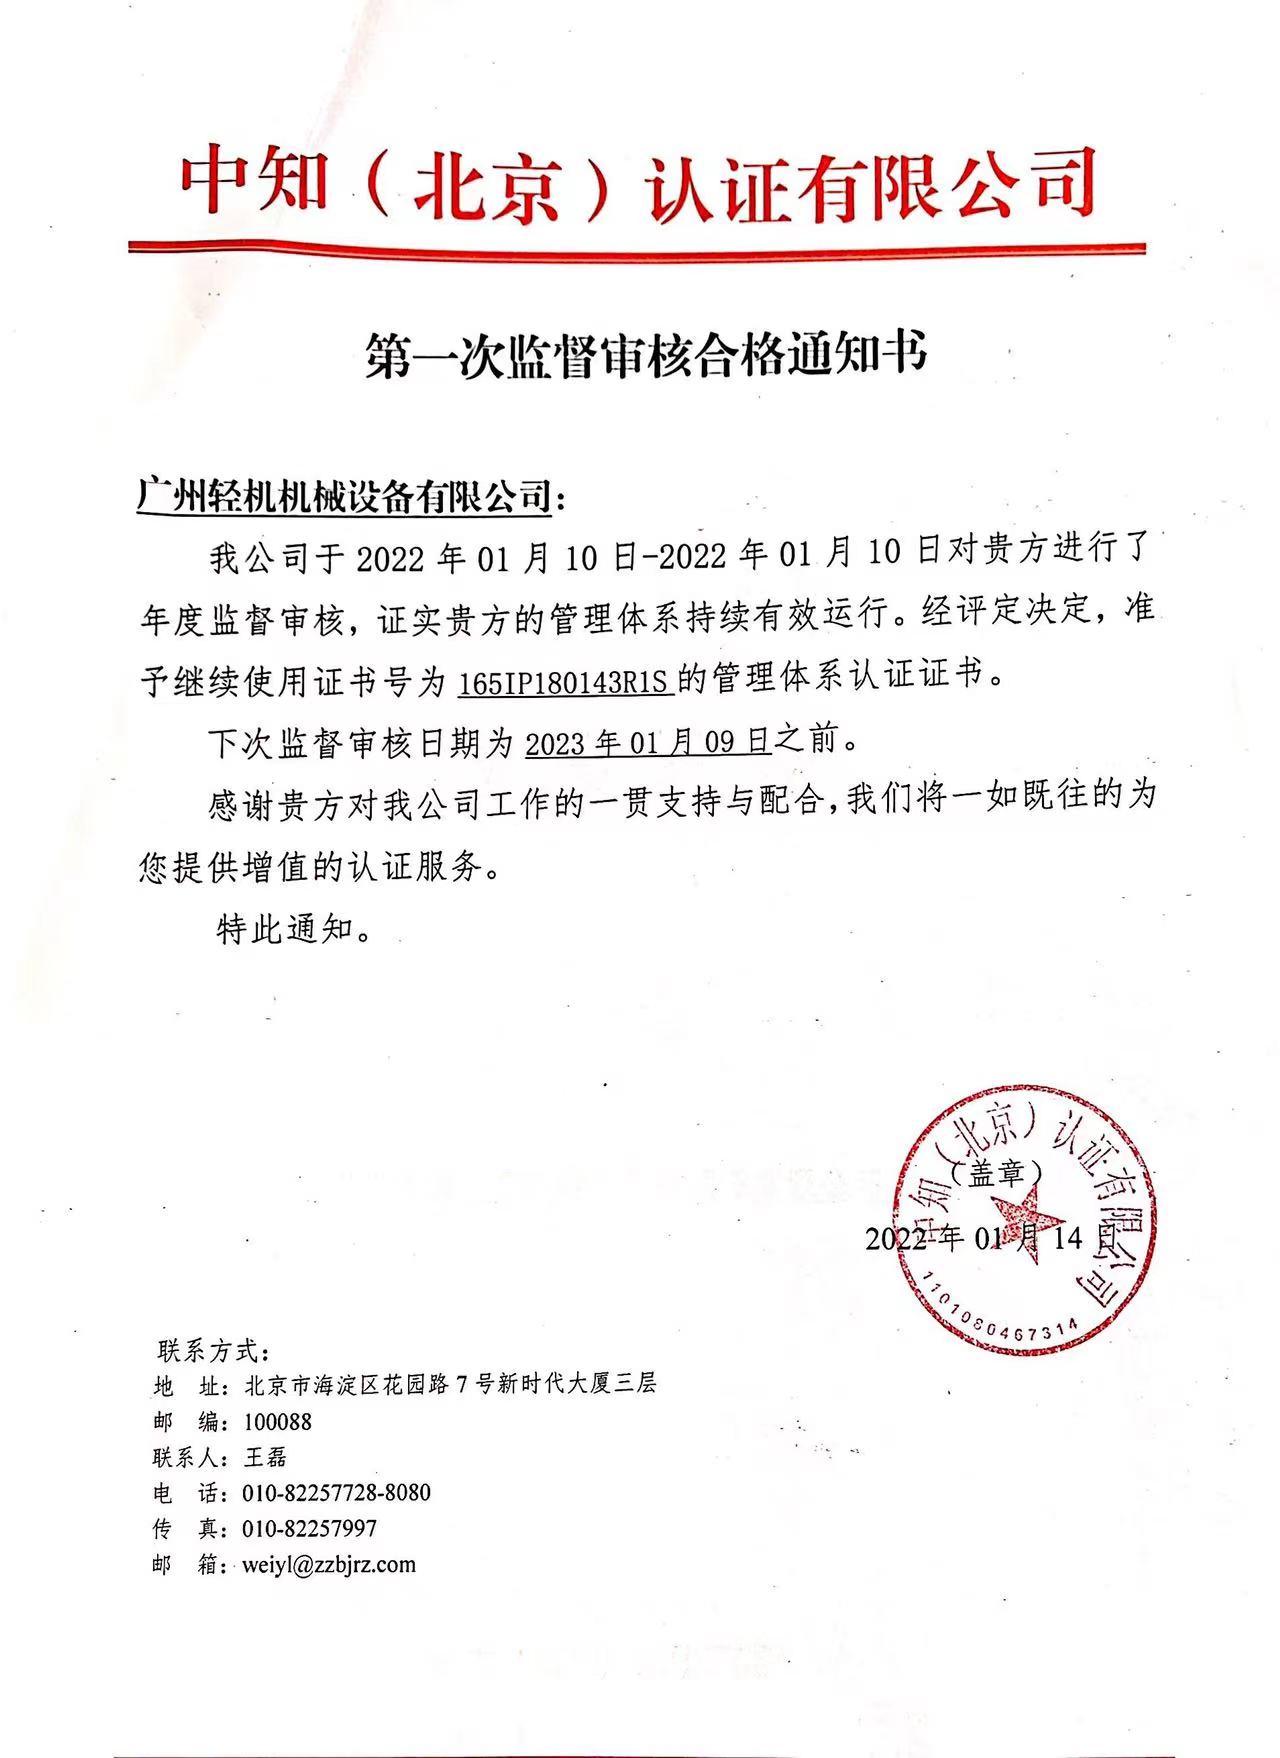 祝贺广州轻机获得由中知（北京）认证有限公司颂布的2021年度监督审核通过通知